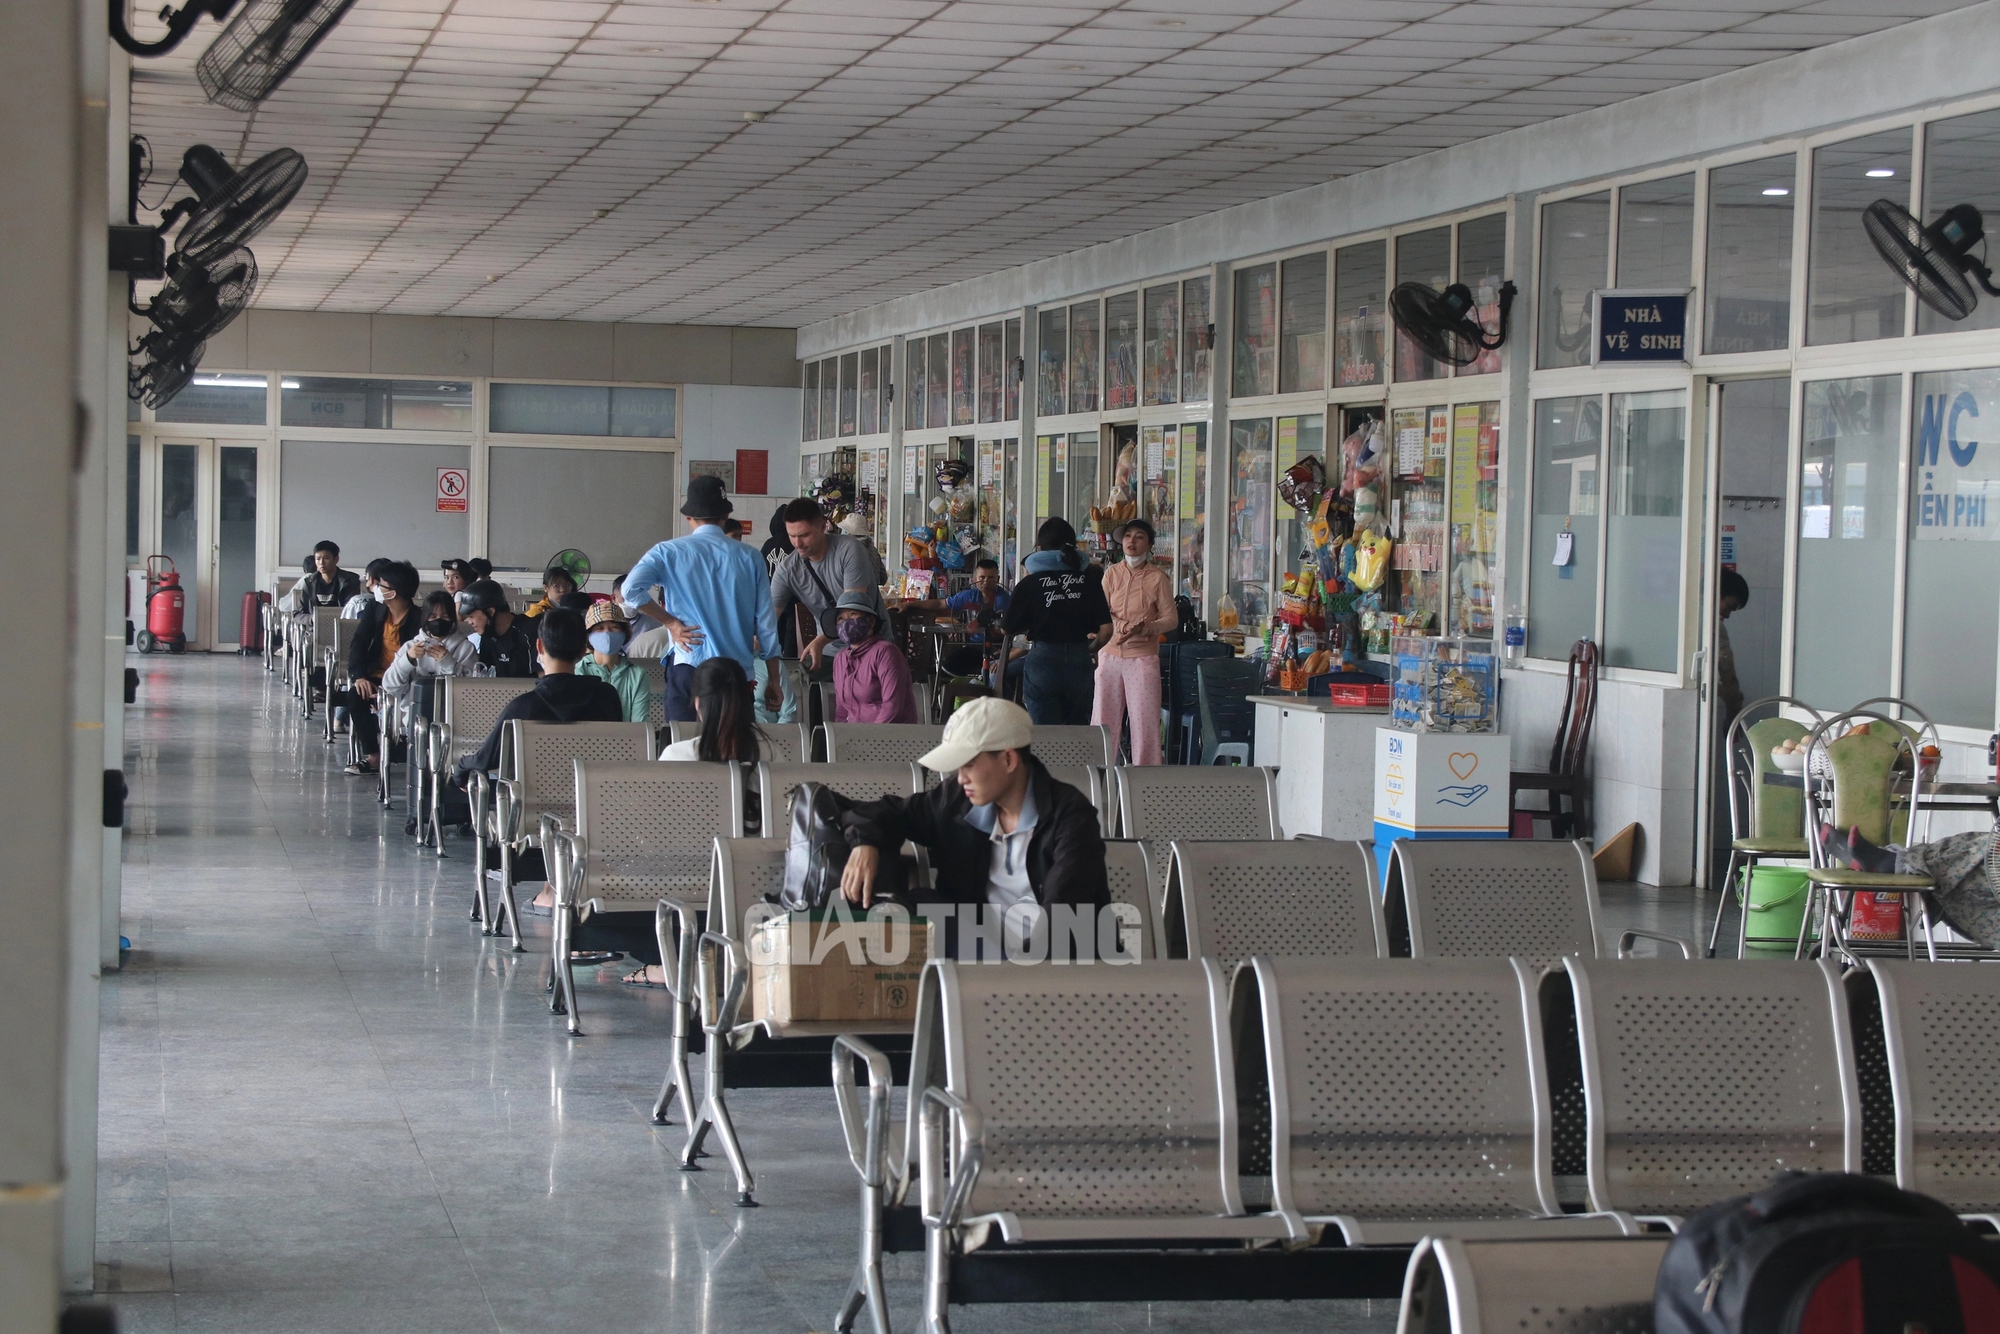 Sân bay, bến xe Đà Nẵng nhộn nhịp ngày đầu nghỉ lễ- Ảnh 4.